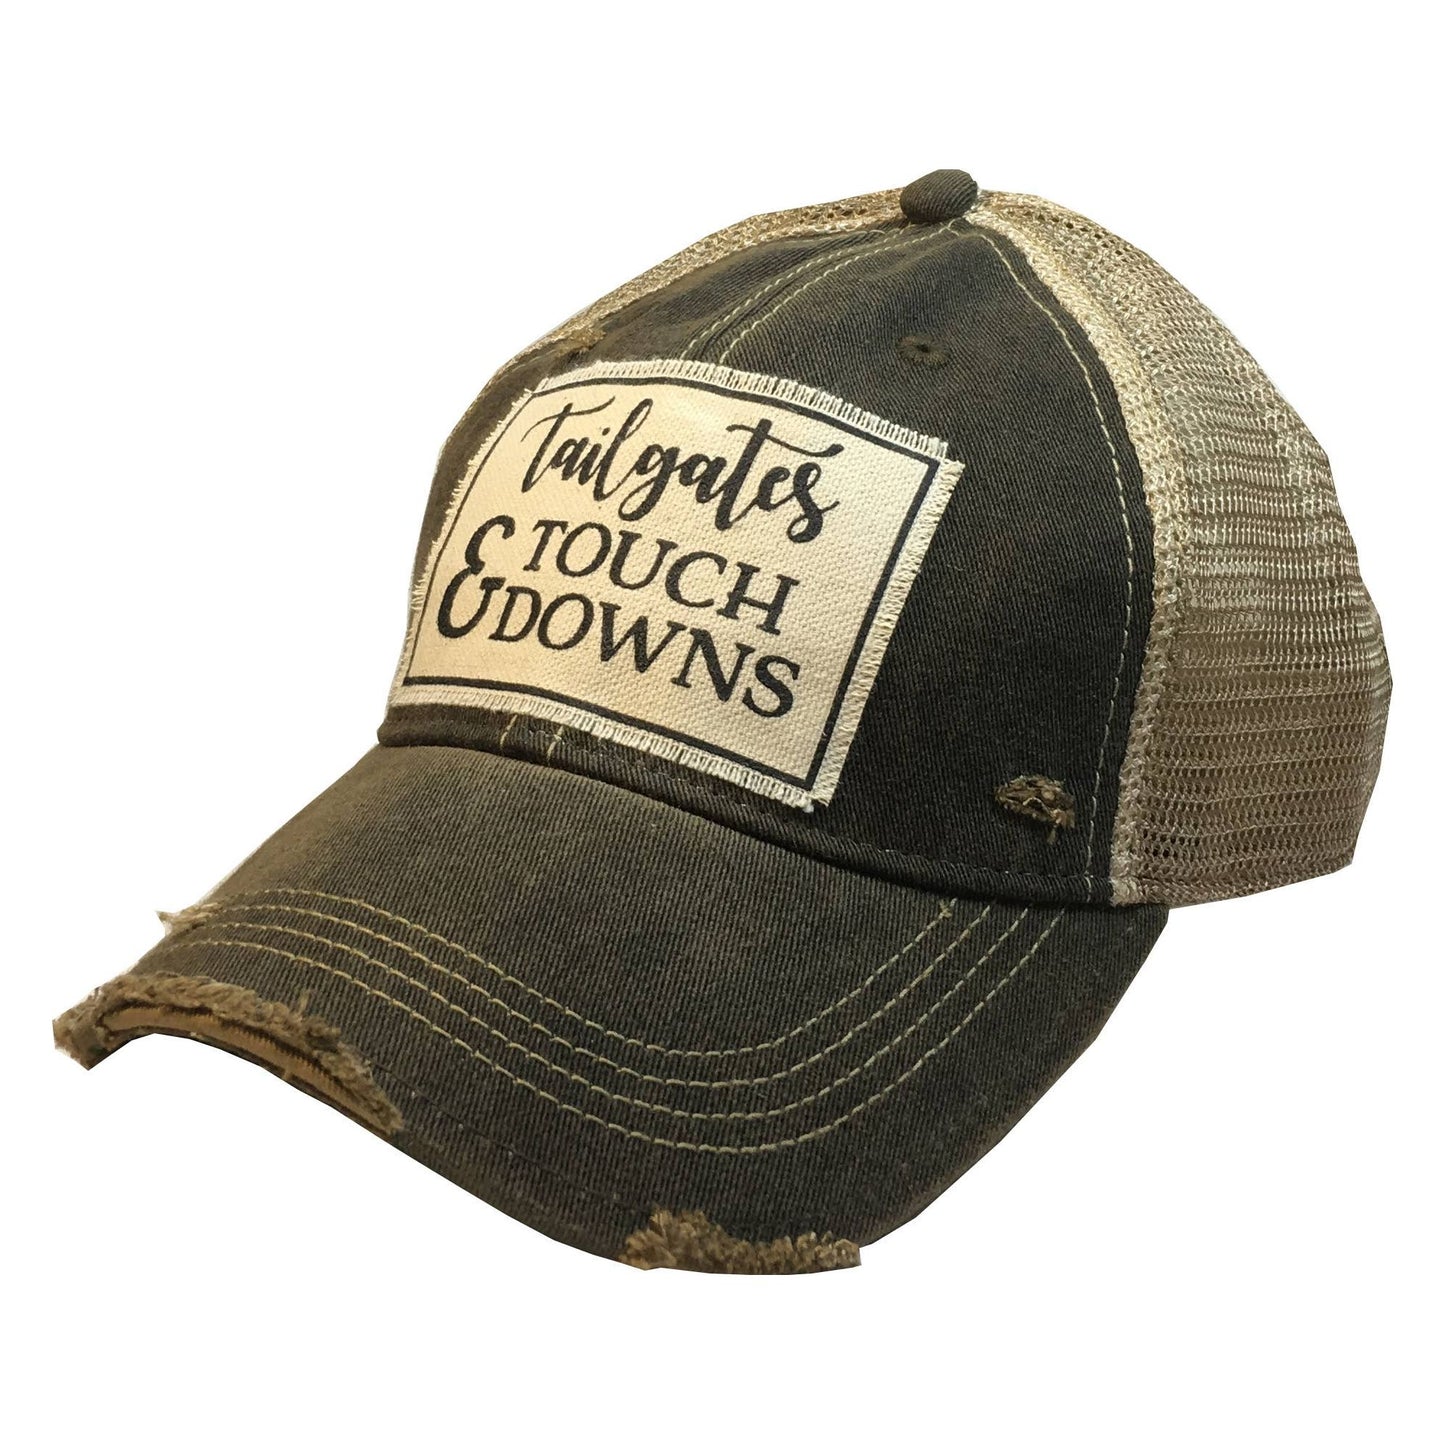 Tailgates & Touchdowns Trucker Hat Baseball Cap